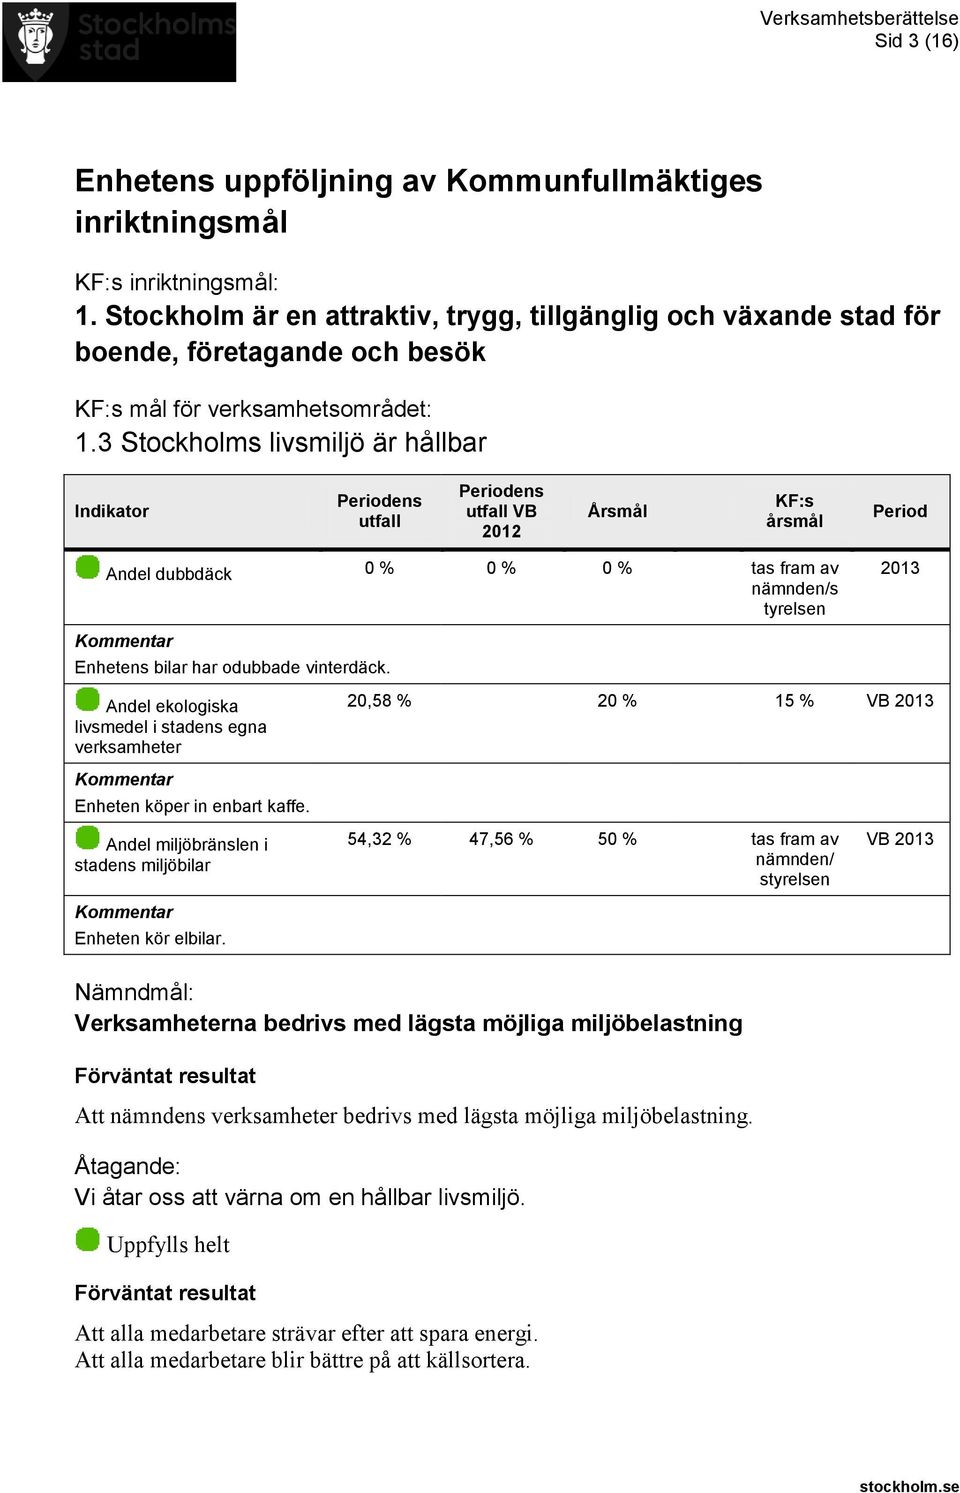 3 Stockholms livsmiljö är hållbar Indikator utfall utfall VB 2012 Årsmål KF:s årsmål Period Andel dubbdäck 0 % 0 % 0 % tas fram av nämnden/s tyrelsen 2013 Enhetens bilar har odubbade vinterdäck.